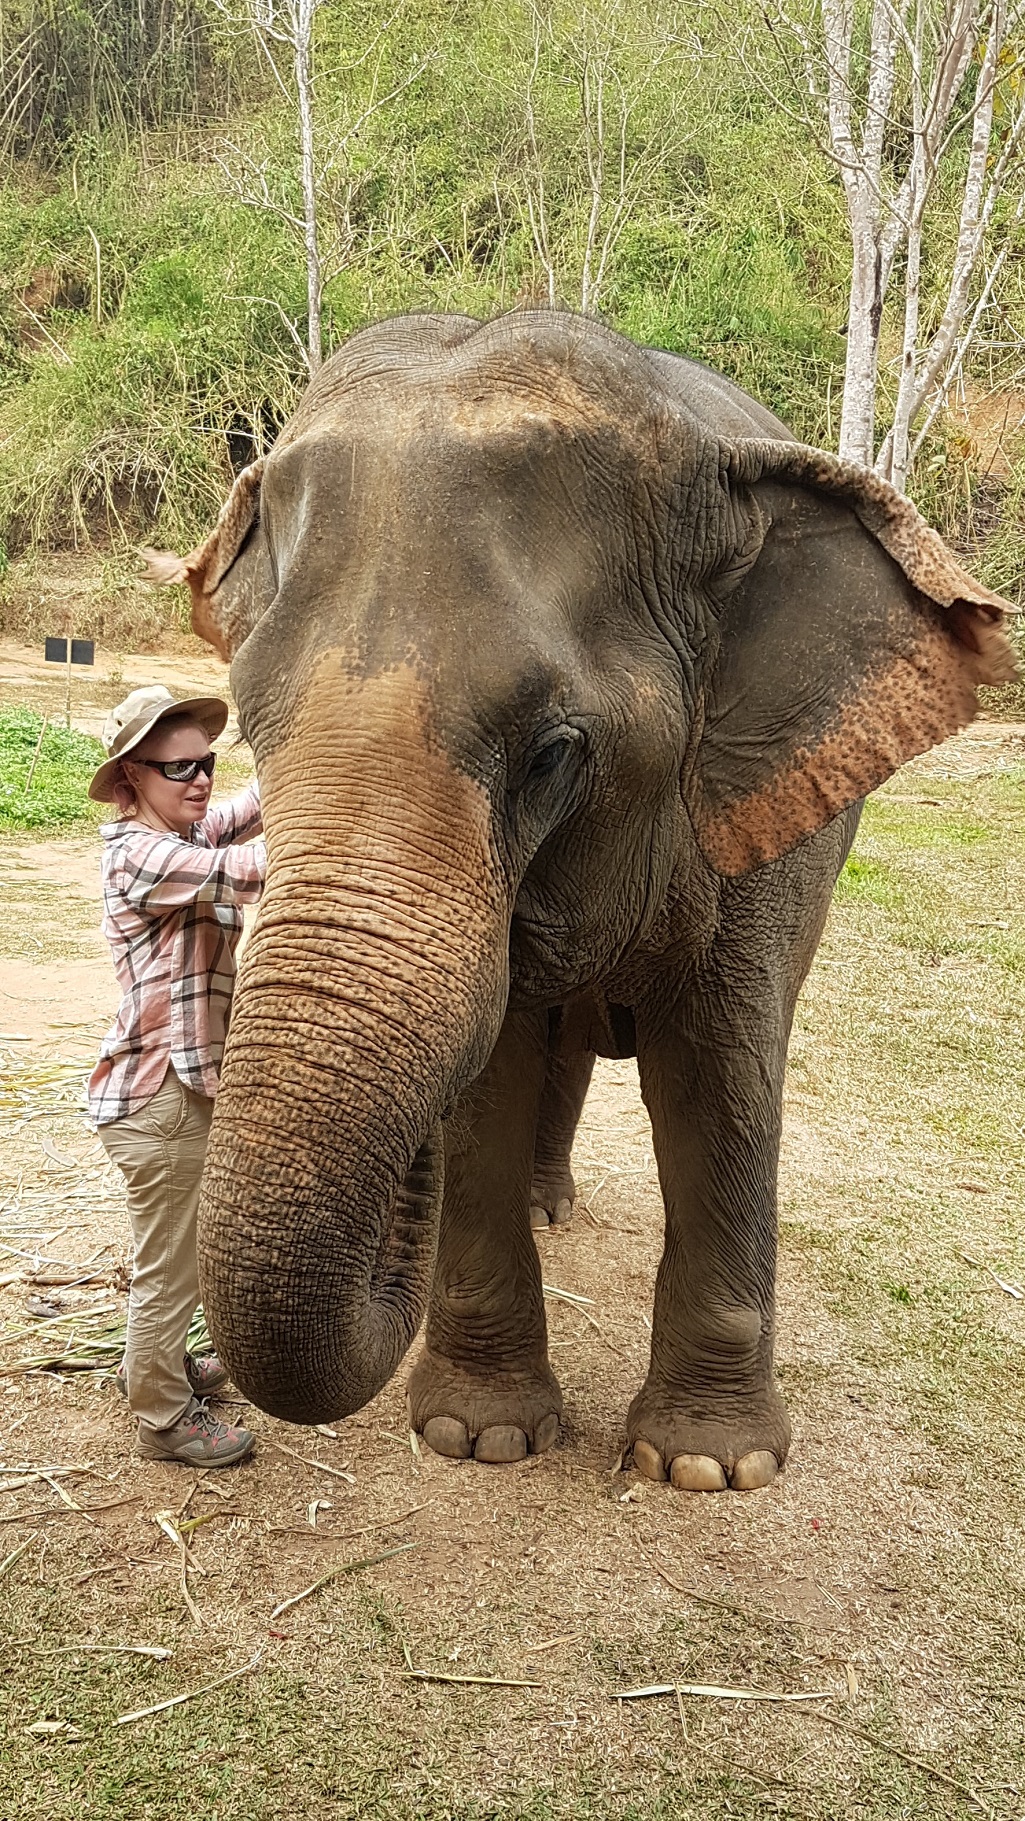 Me treating an elephant